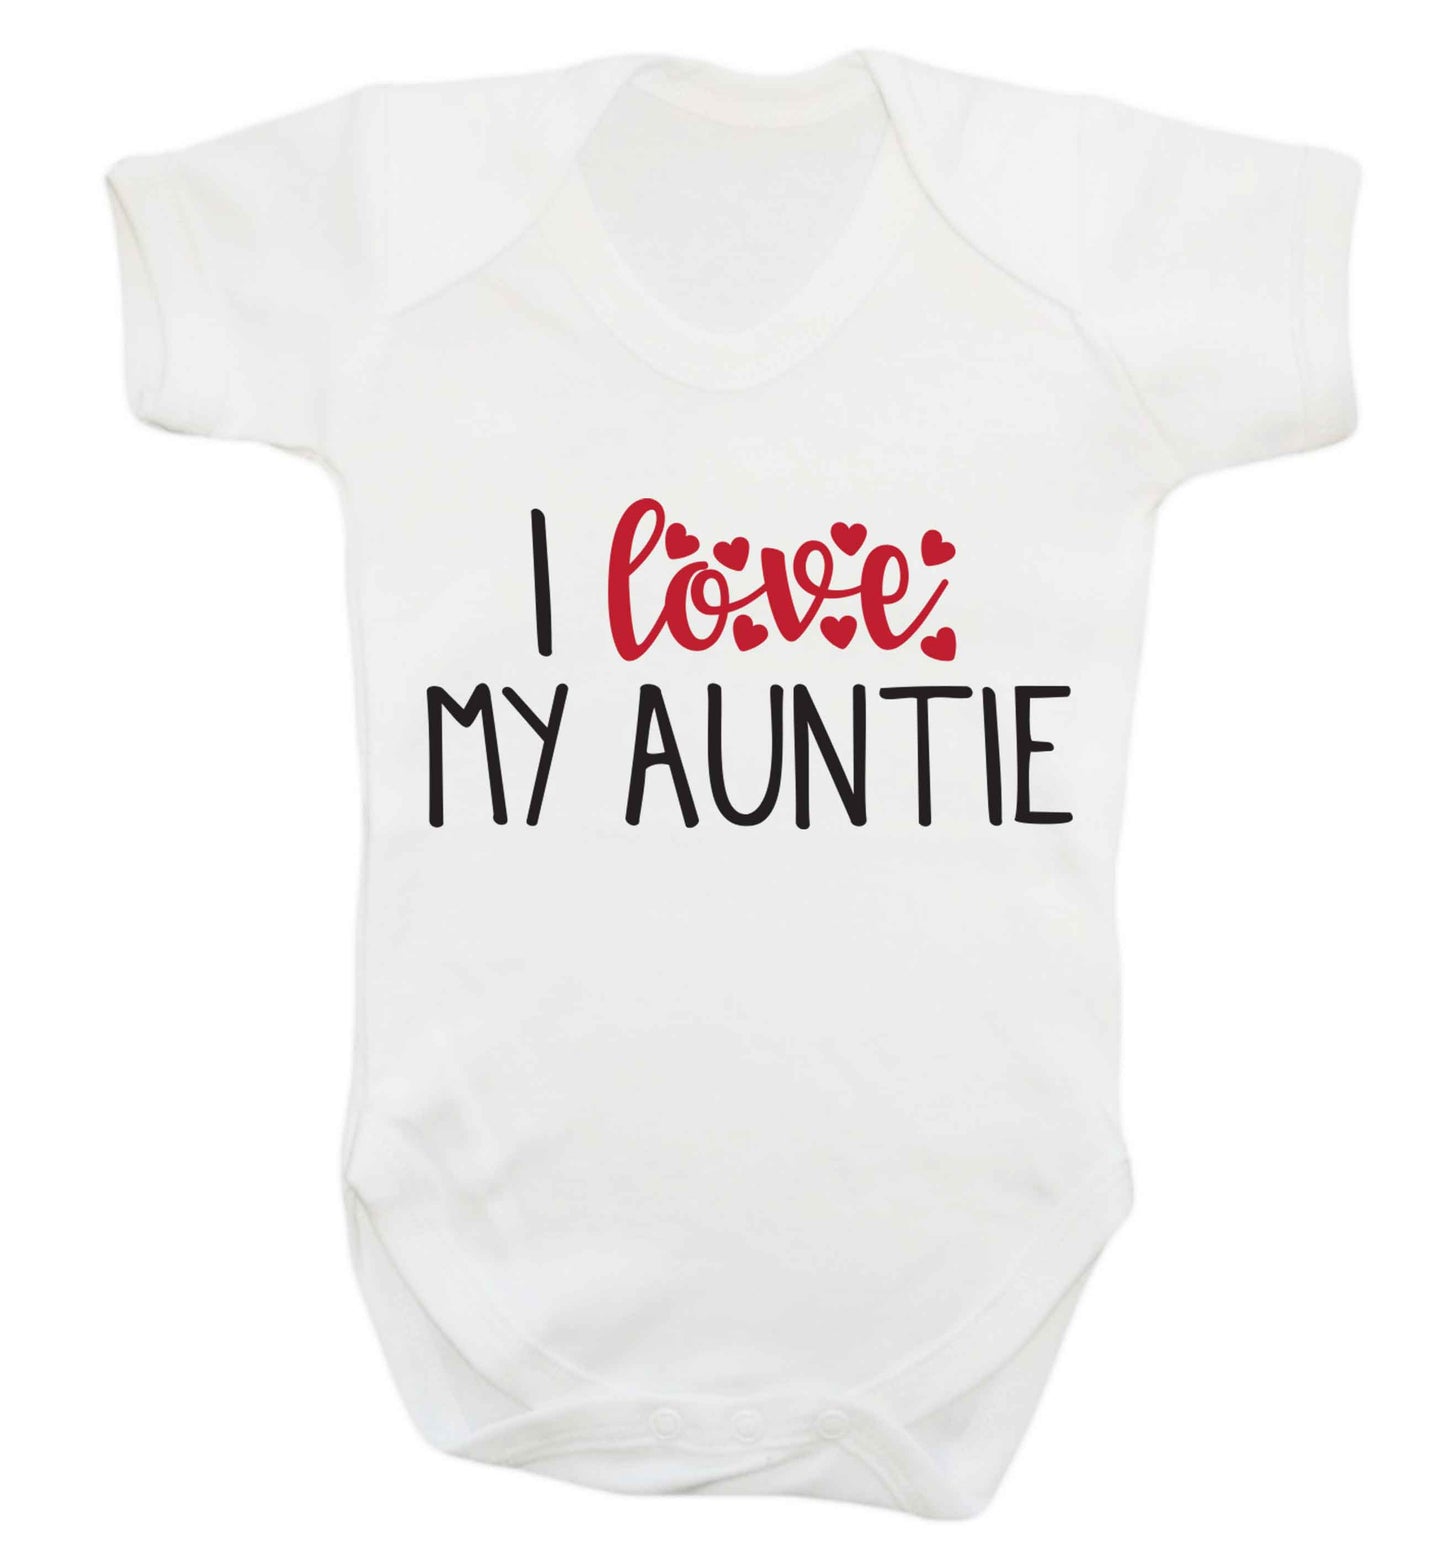 I love my auntie Baby Vest white 18-24 months